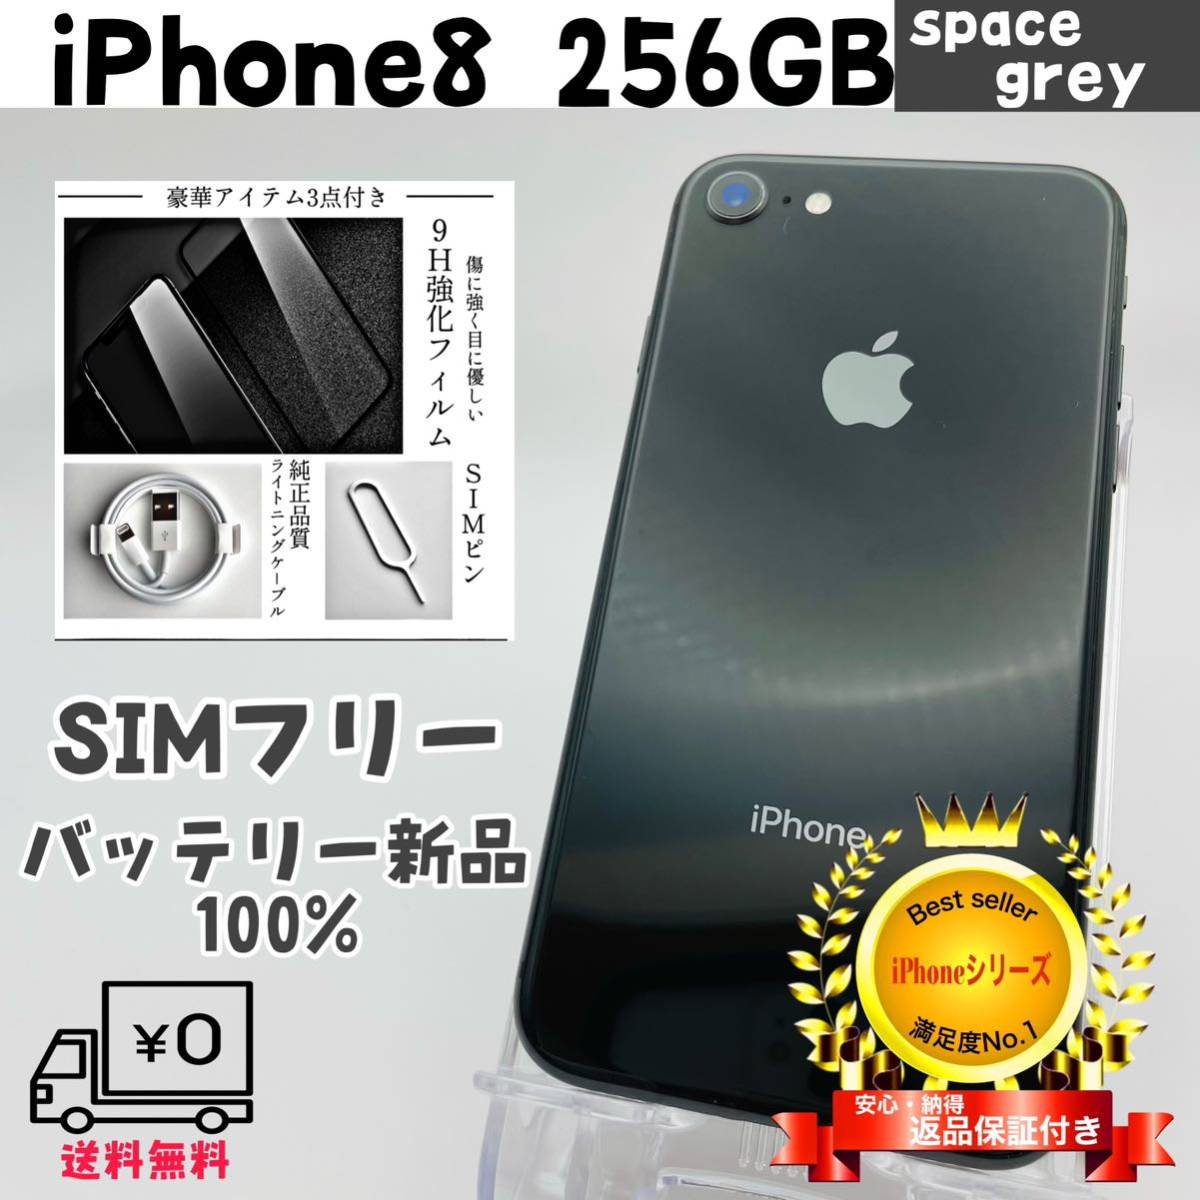 【美品】iPhone8 256GB space grey SIMフリー